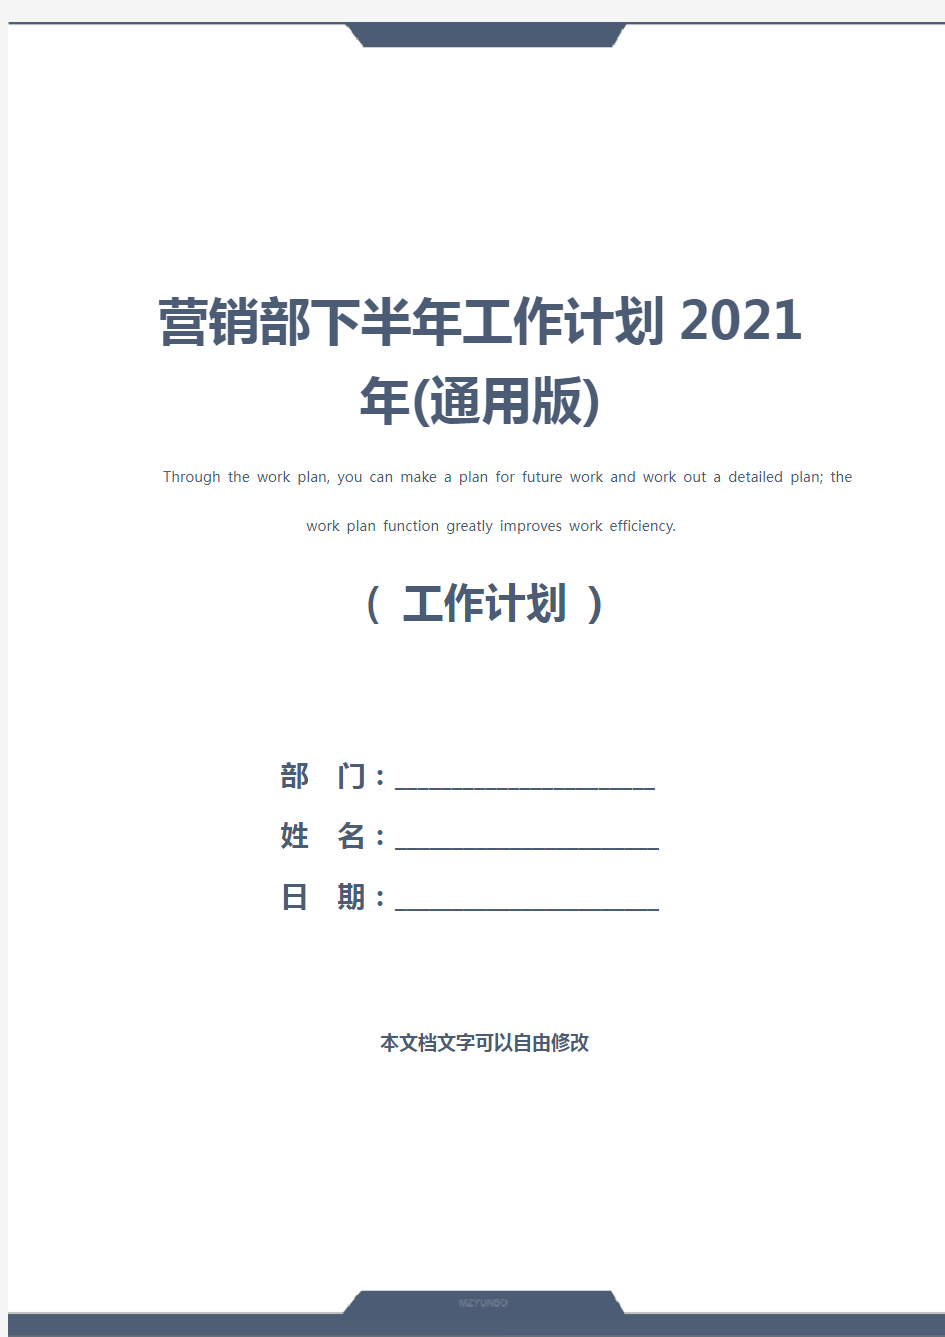 营销部下半年工作计划2021年(通用版)